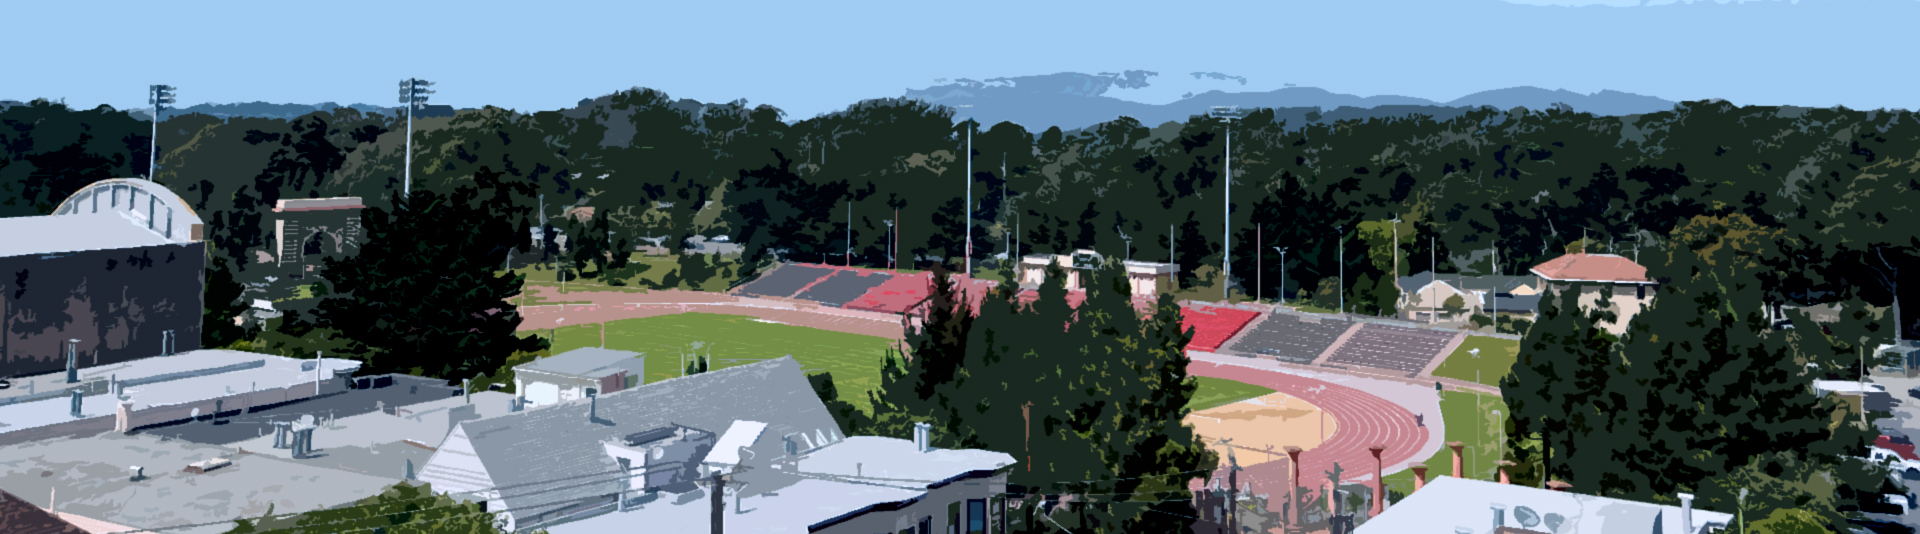 A view of Golden Gate Park featuring Kezar Stadium